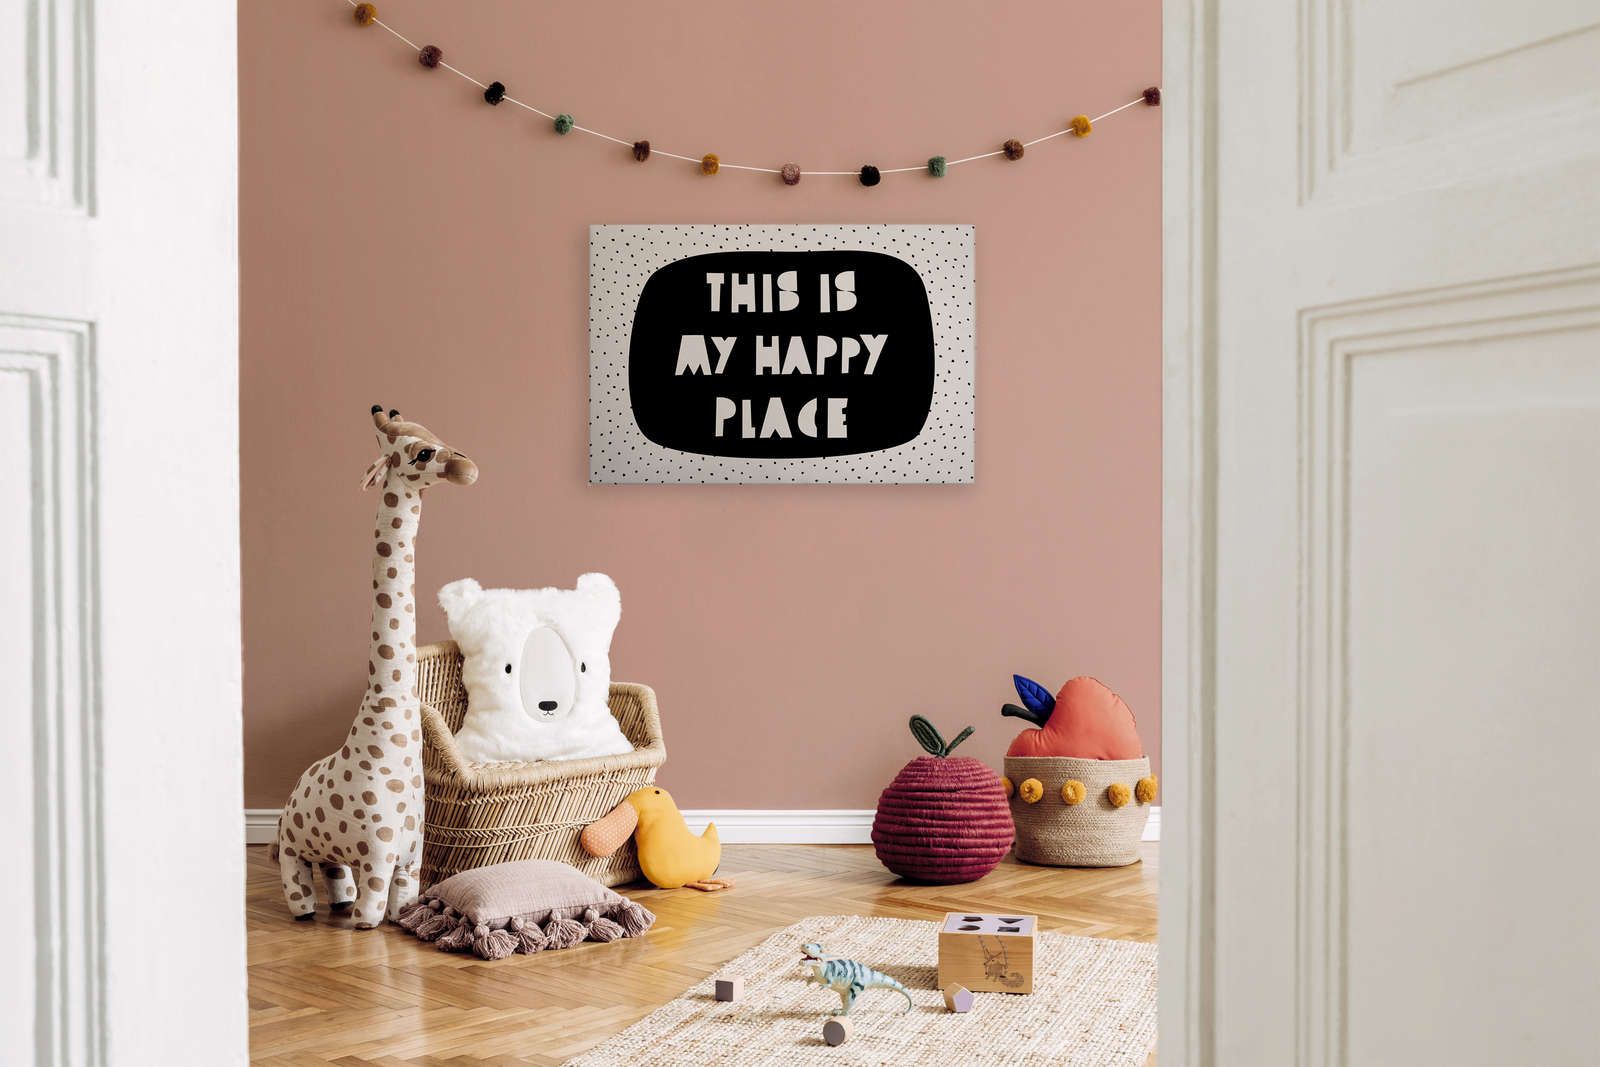             Toile pour chambre d'enfant avec inscription "This is my happy place" - 90 cm x 60 cm
        